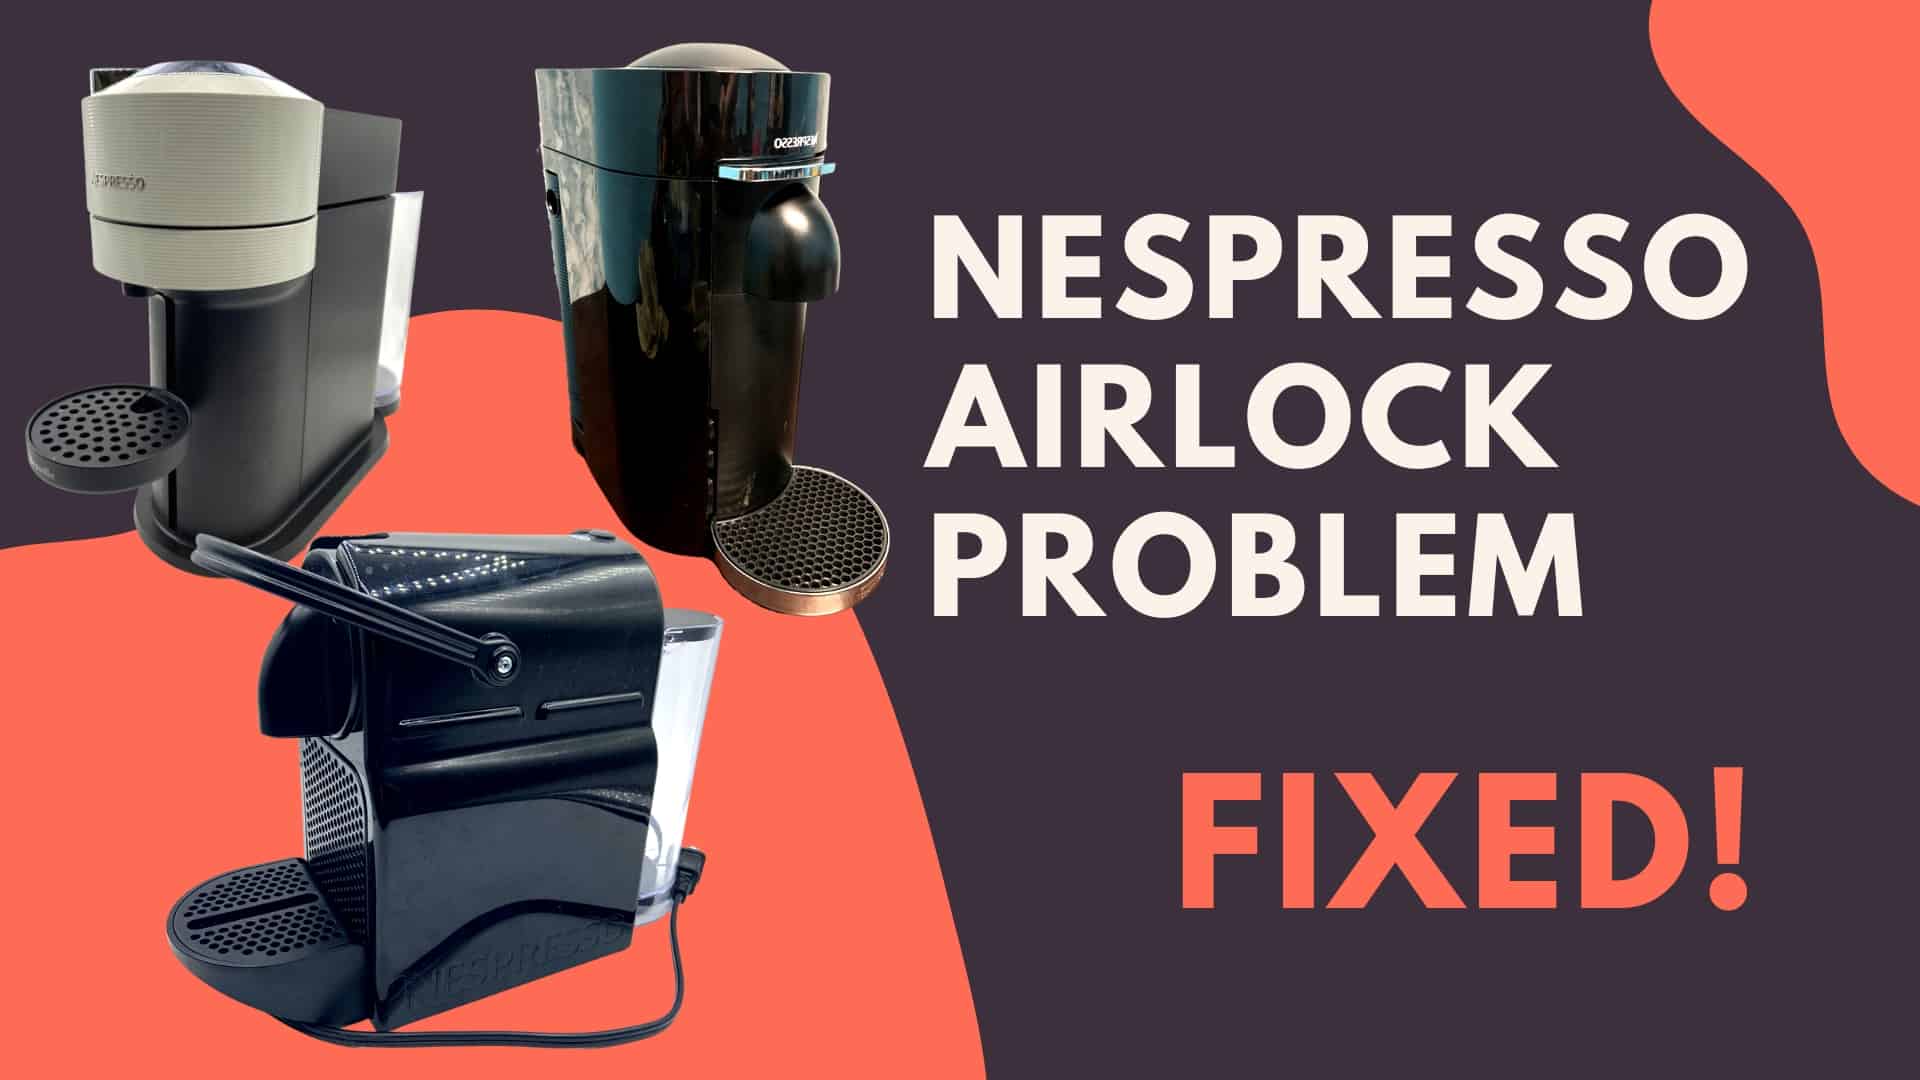 Nespresso airlock 
problem